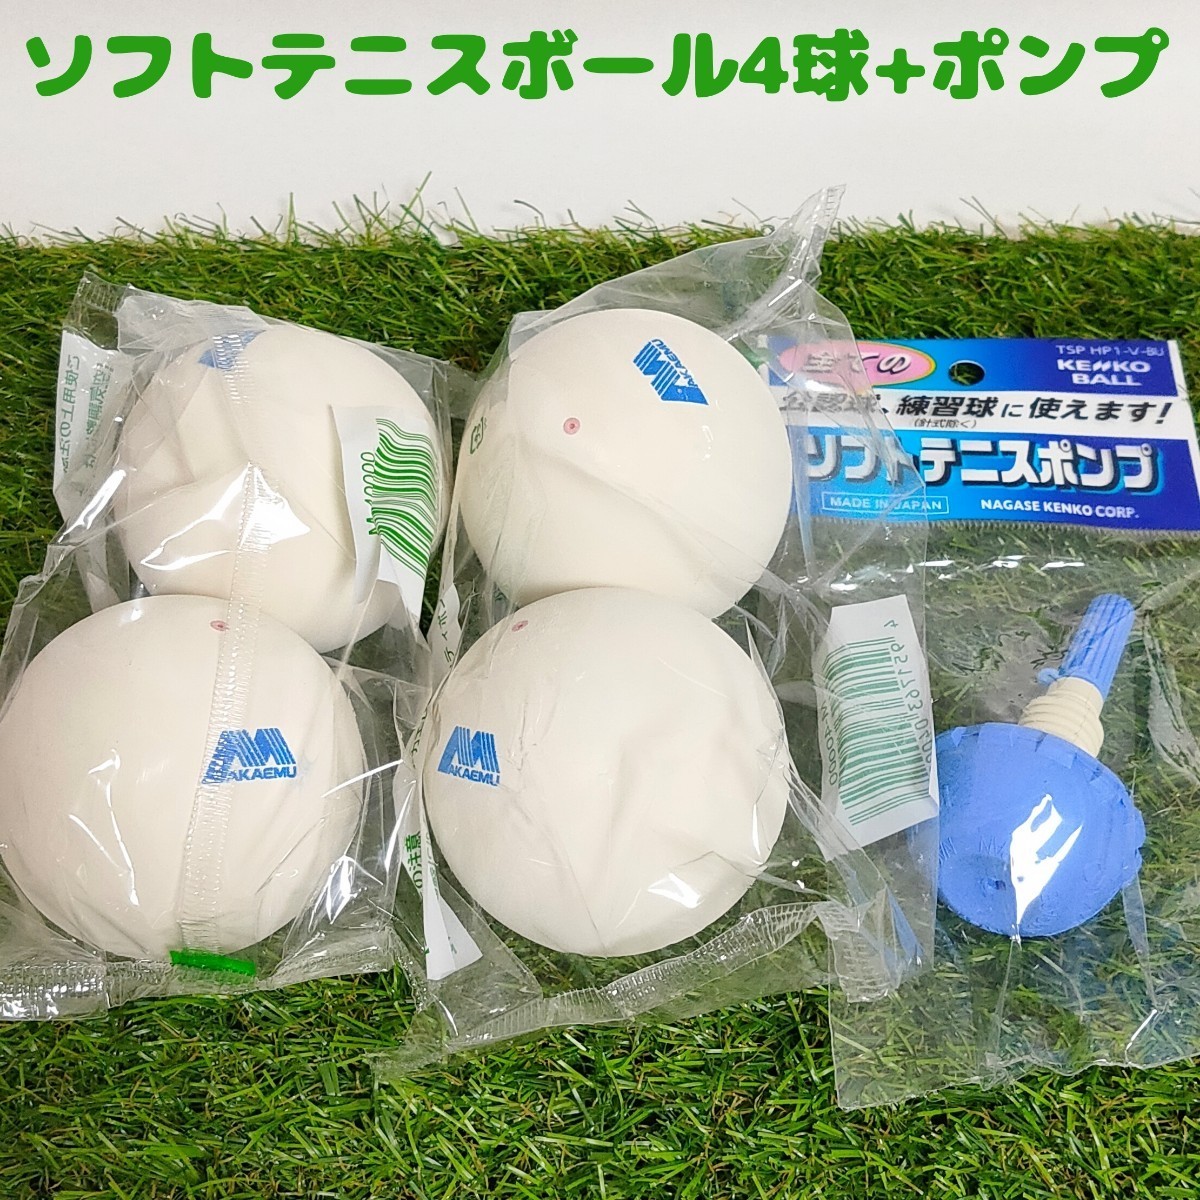 534円 通信販売 軟式テニスボール 6球 空気入れ ソフトテニスボール